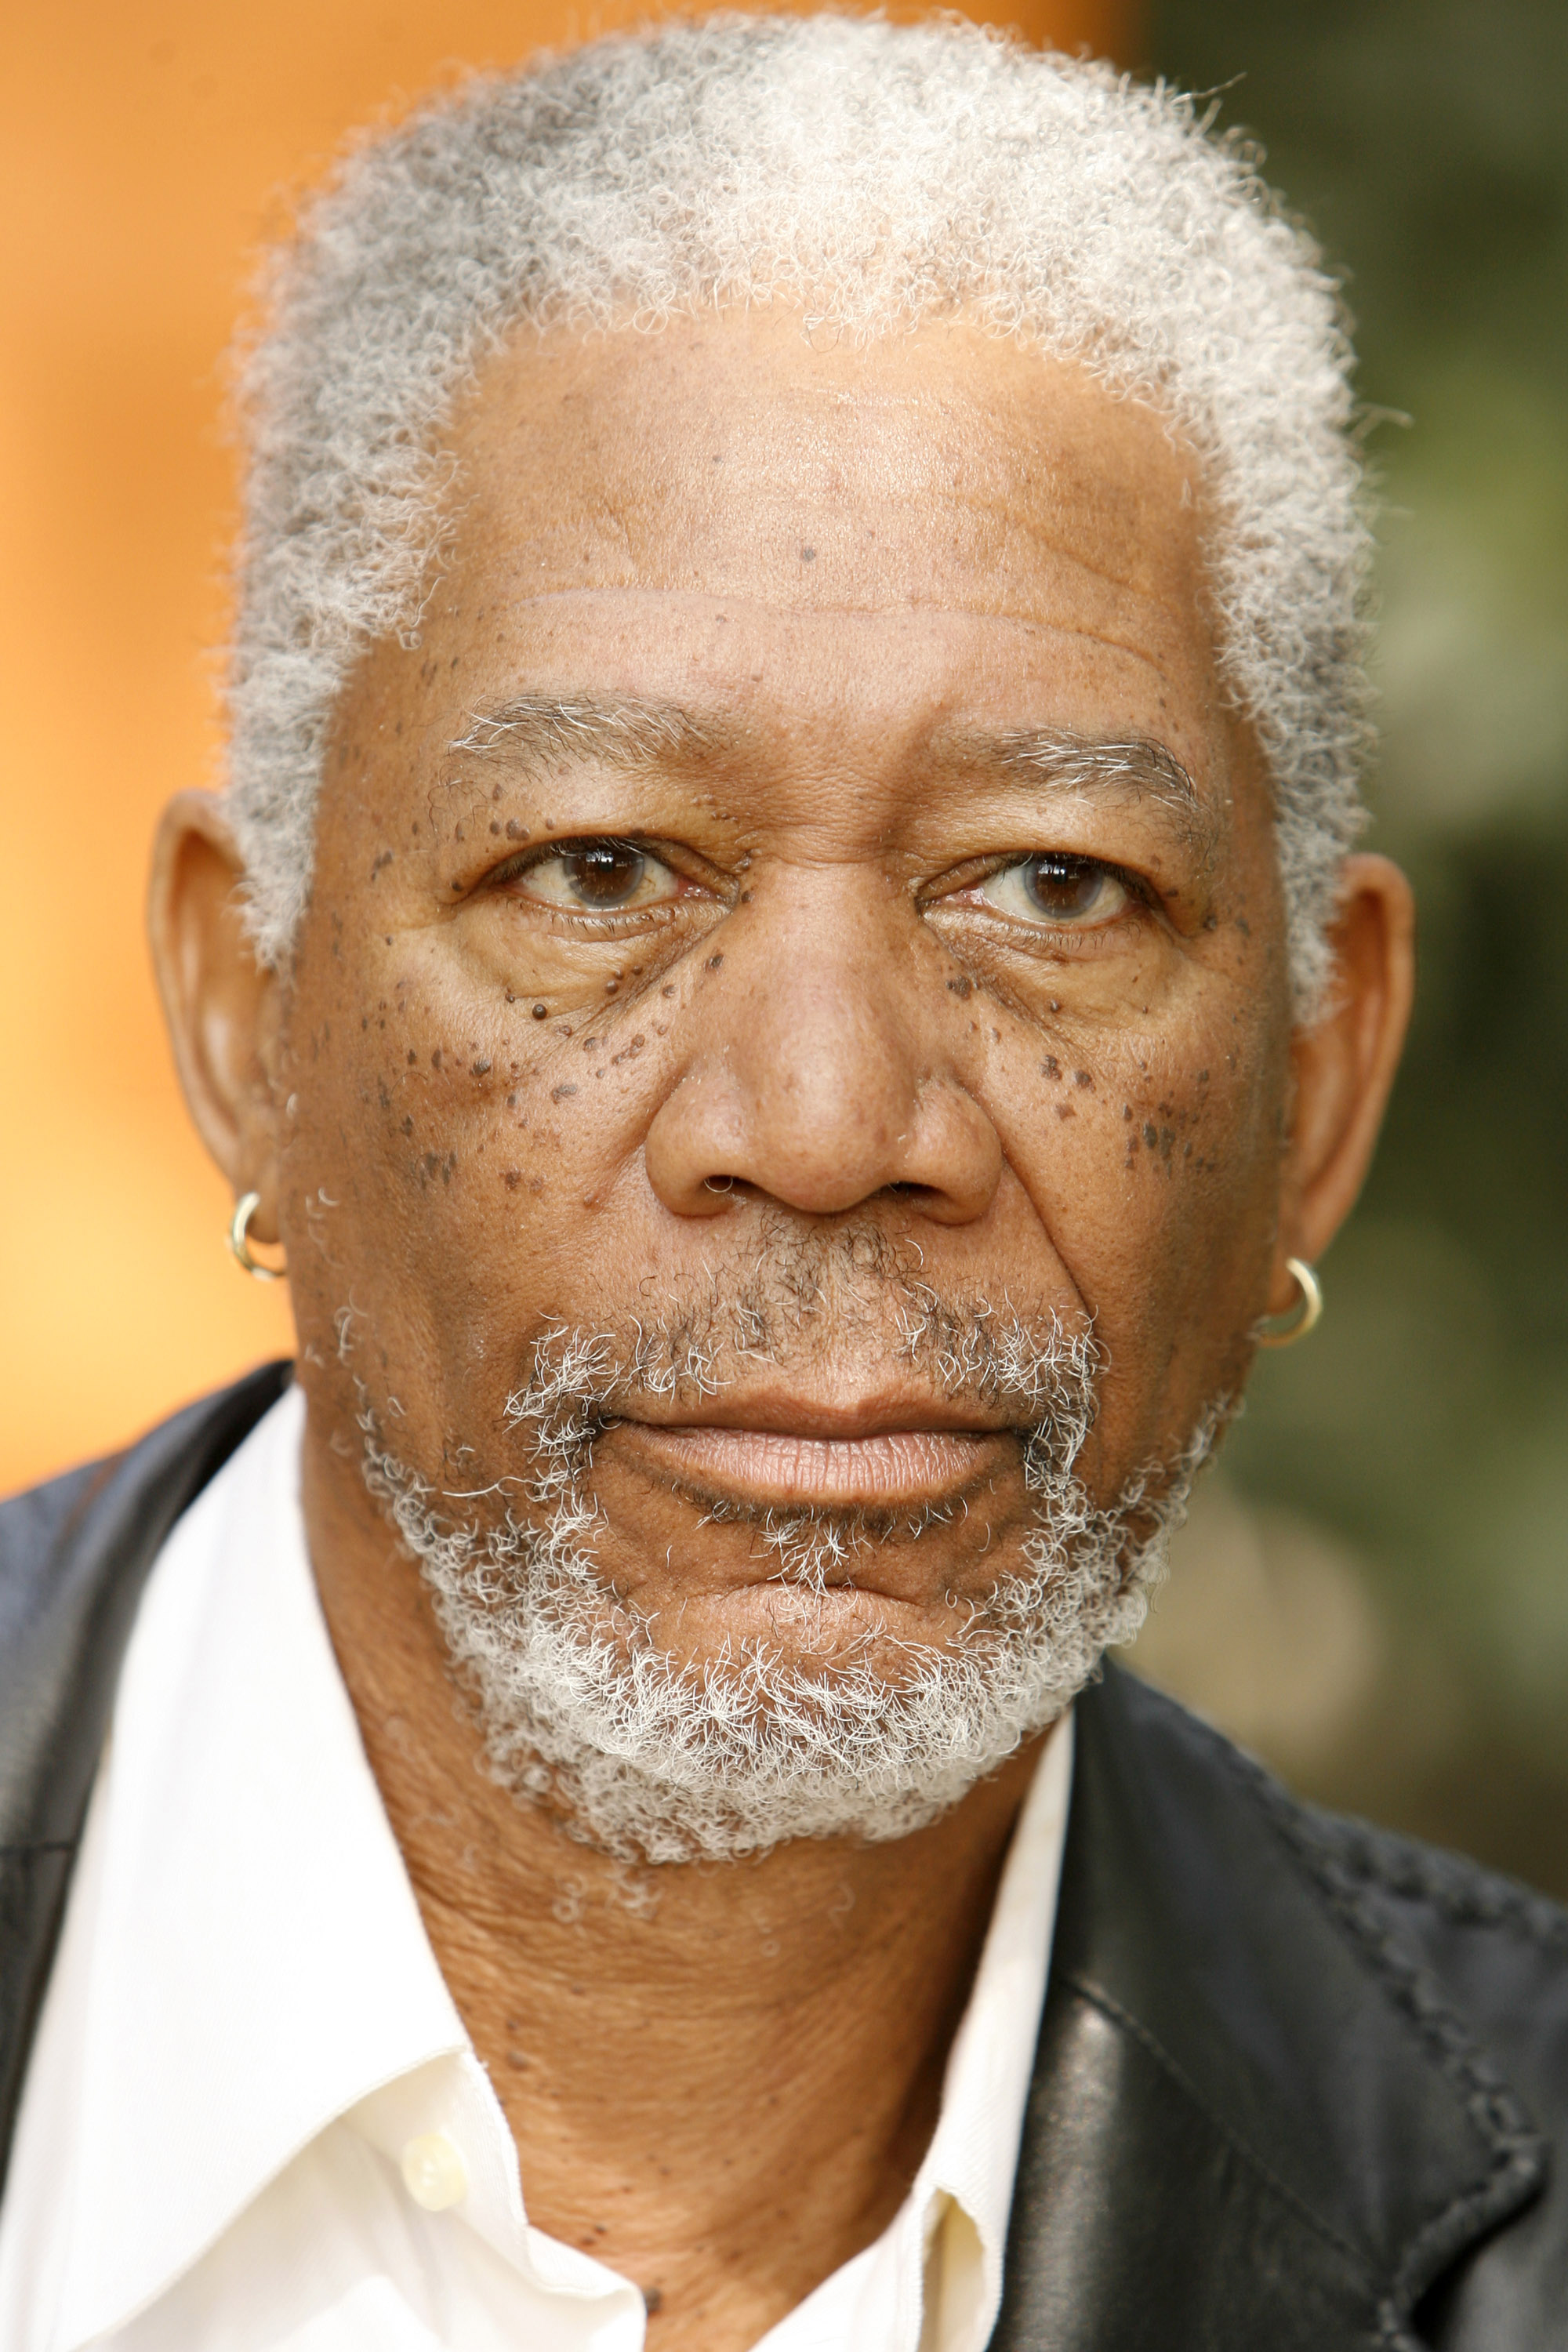 Morgan Freeman lors d'une séance de photos pour "Show Circuit" en 2006 | Source : Getty Images